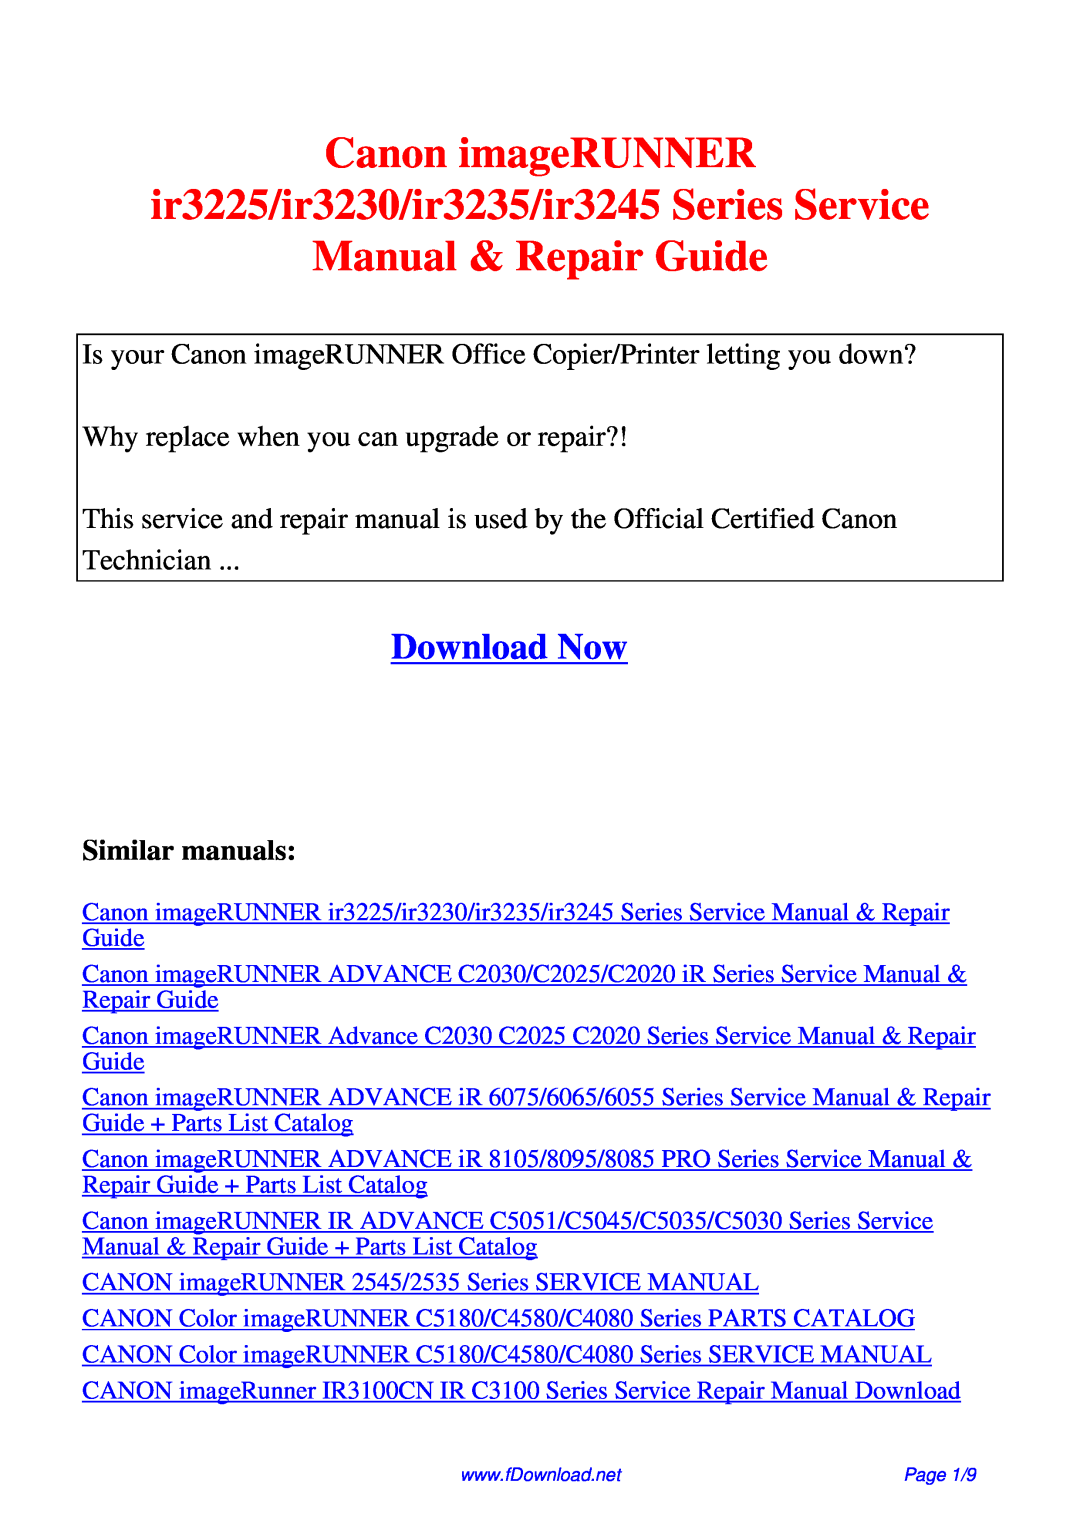 Canon service manual Canon imageRUNNER ir3225/ir3230/ir3235/ir3245 Series Service, Manual & Repair Guide, Download Now 